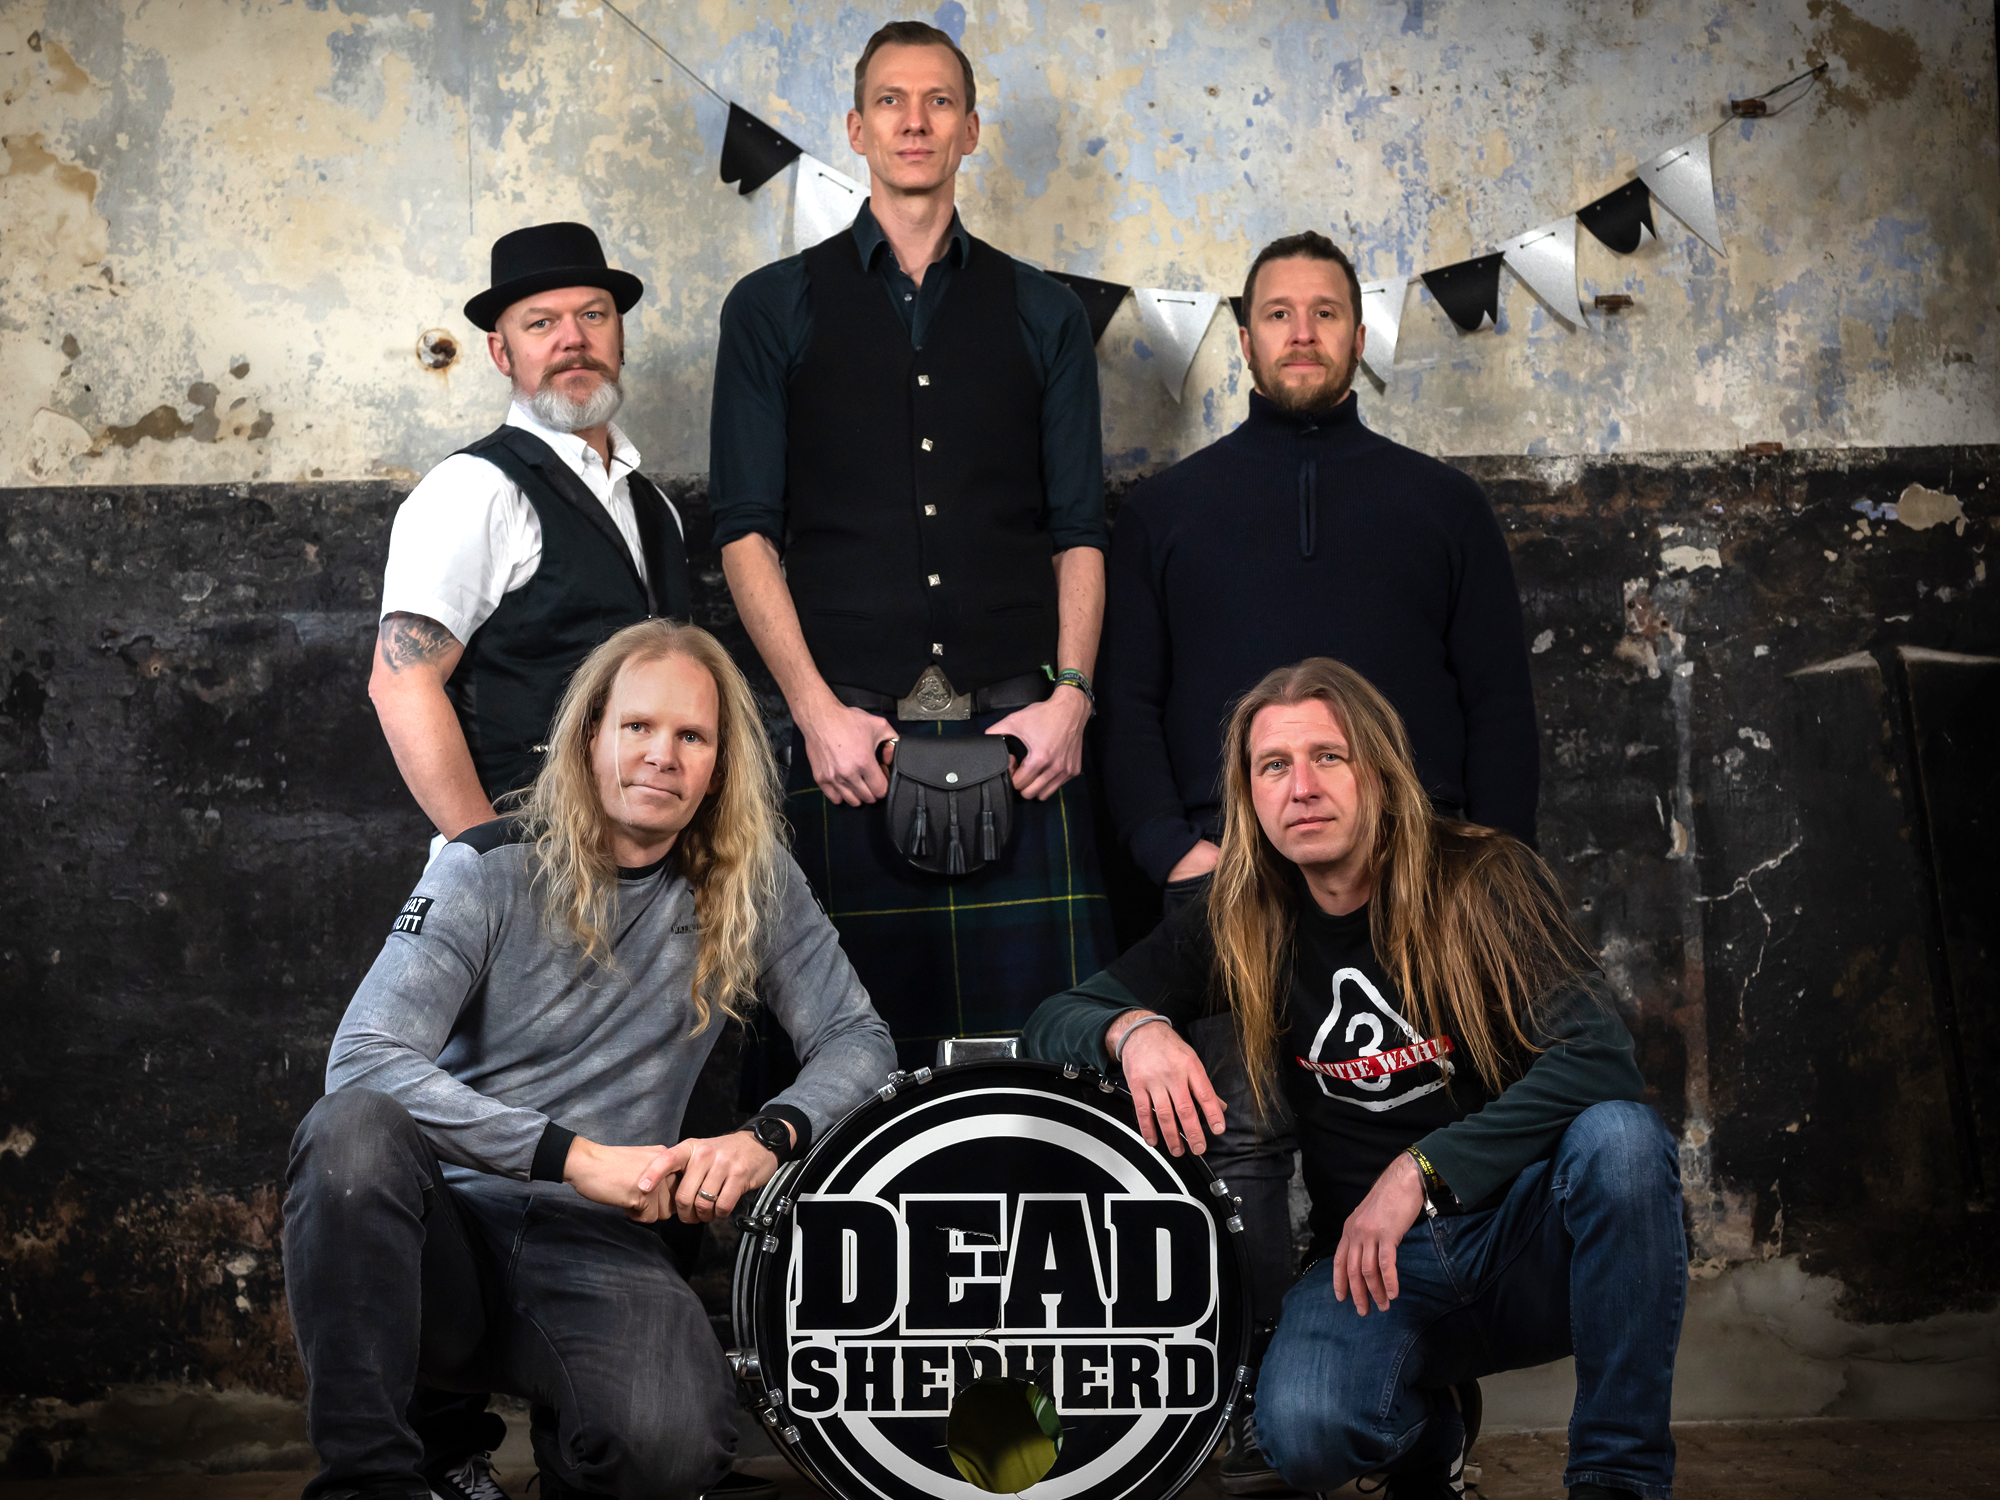 DEAD SHEPHERD